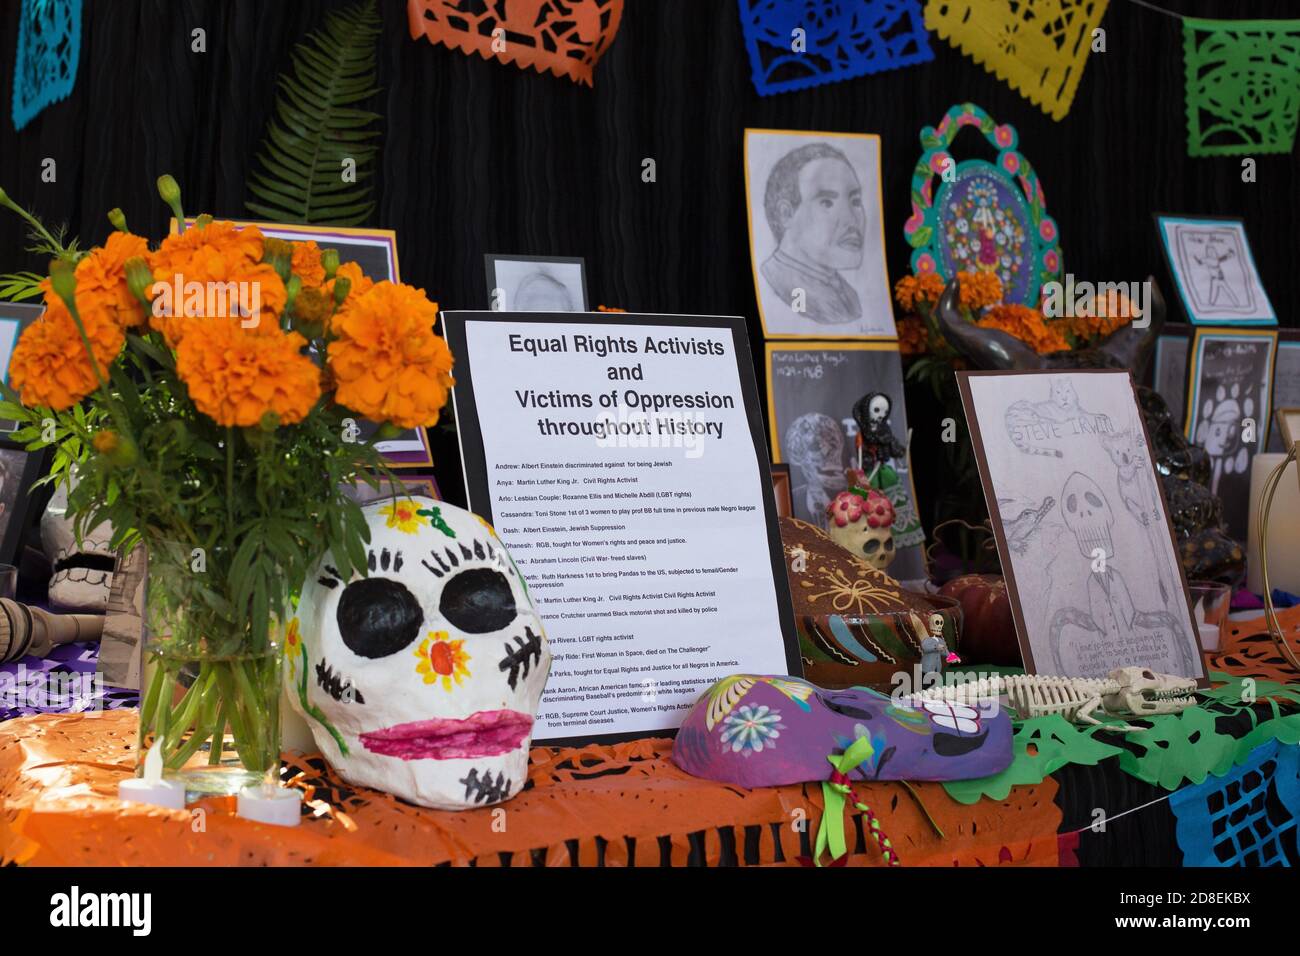 Eine Ofrenda, oder Day of the Dead Altar, gewidmet Gleichberechtigung Aktivisten und Opfer von Unterdrückung, auf der Ausstellung an der Universität von Oregon in Eugene. Stockfoto